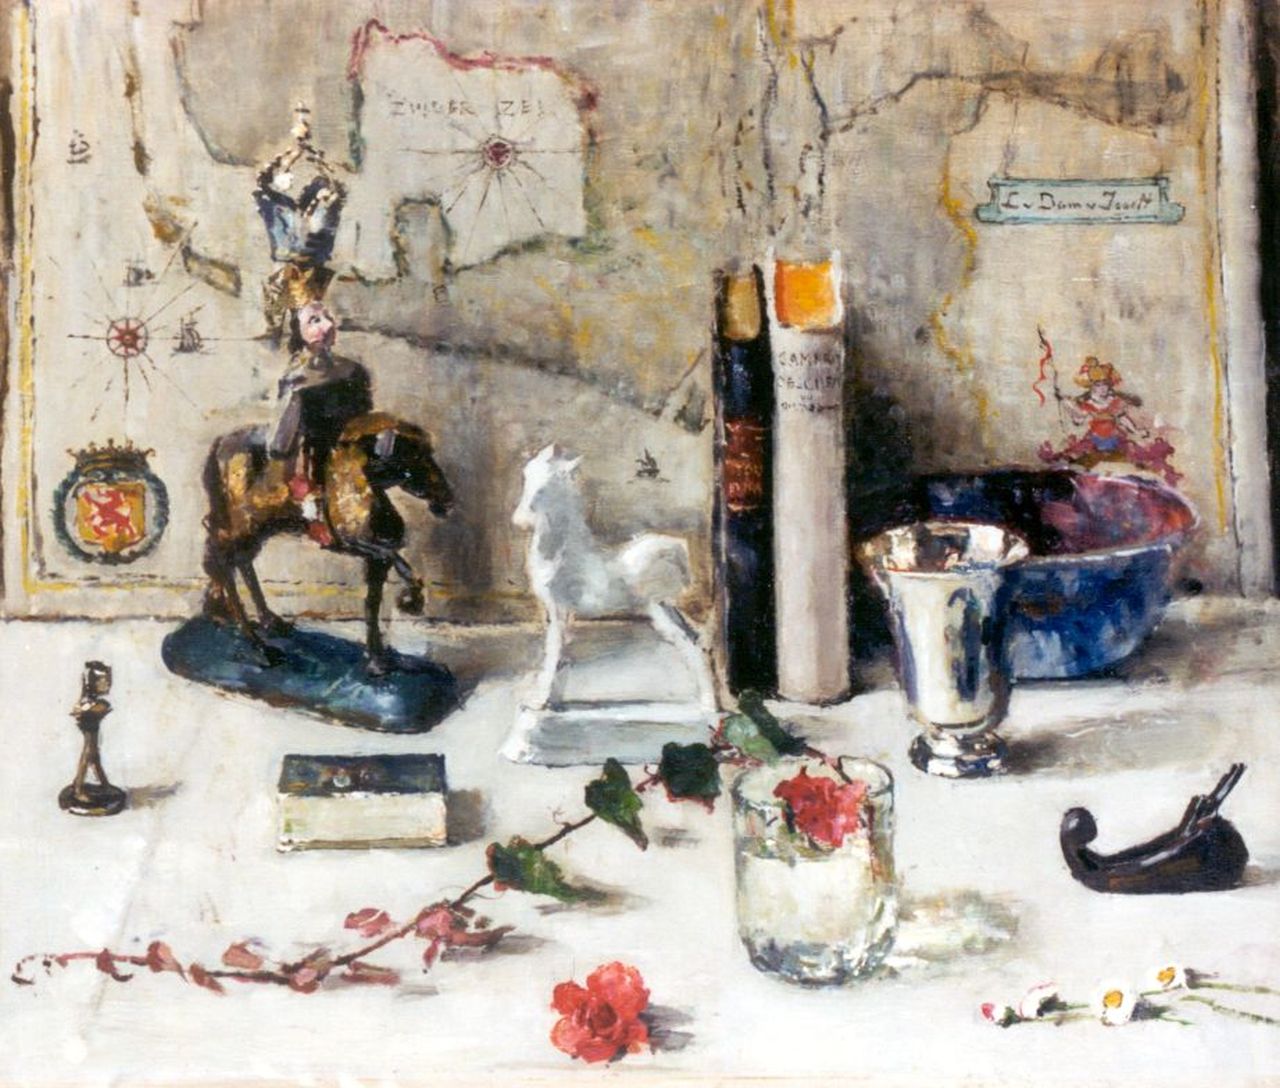 Dam van Isselt L. van | Lucie van Dam van Isselt, Stilleven, olieverf op paneel 53,0 x 62,7 cm, gesigneerd rechtsboven en te dateren 1948